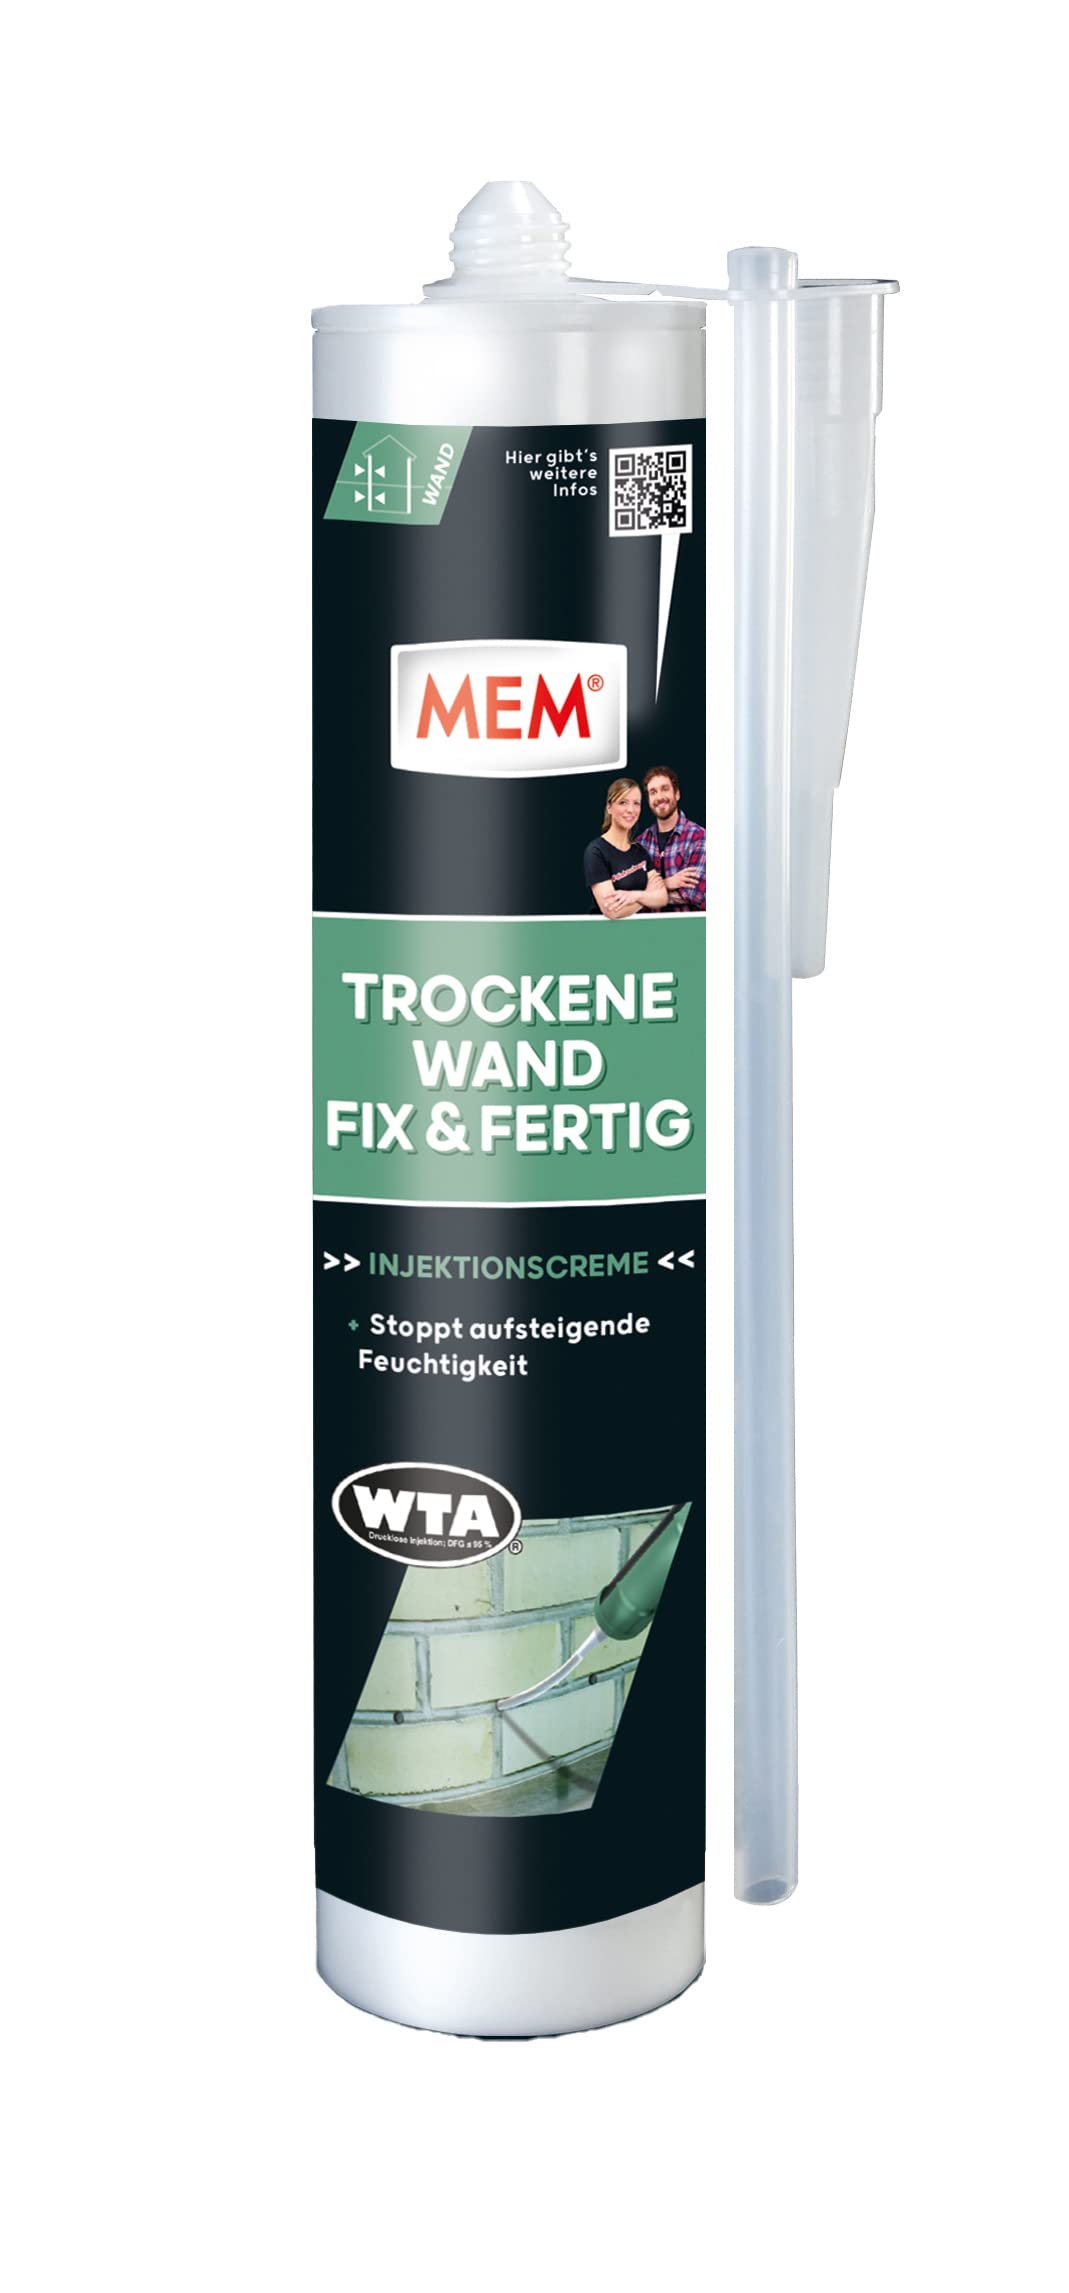 MEM Trockene Wand Fix & Fertig, Dauerhafte Horizontalsperre für durchgängige Lagerfugen, Anwendungsfertig, Einfache und schnelle Anwendung, 290 ml